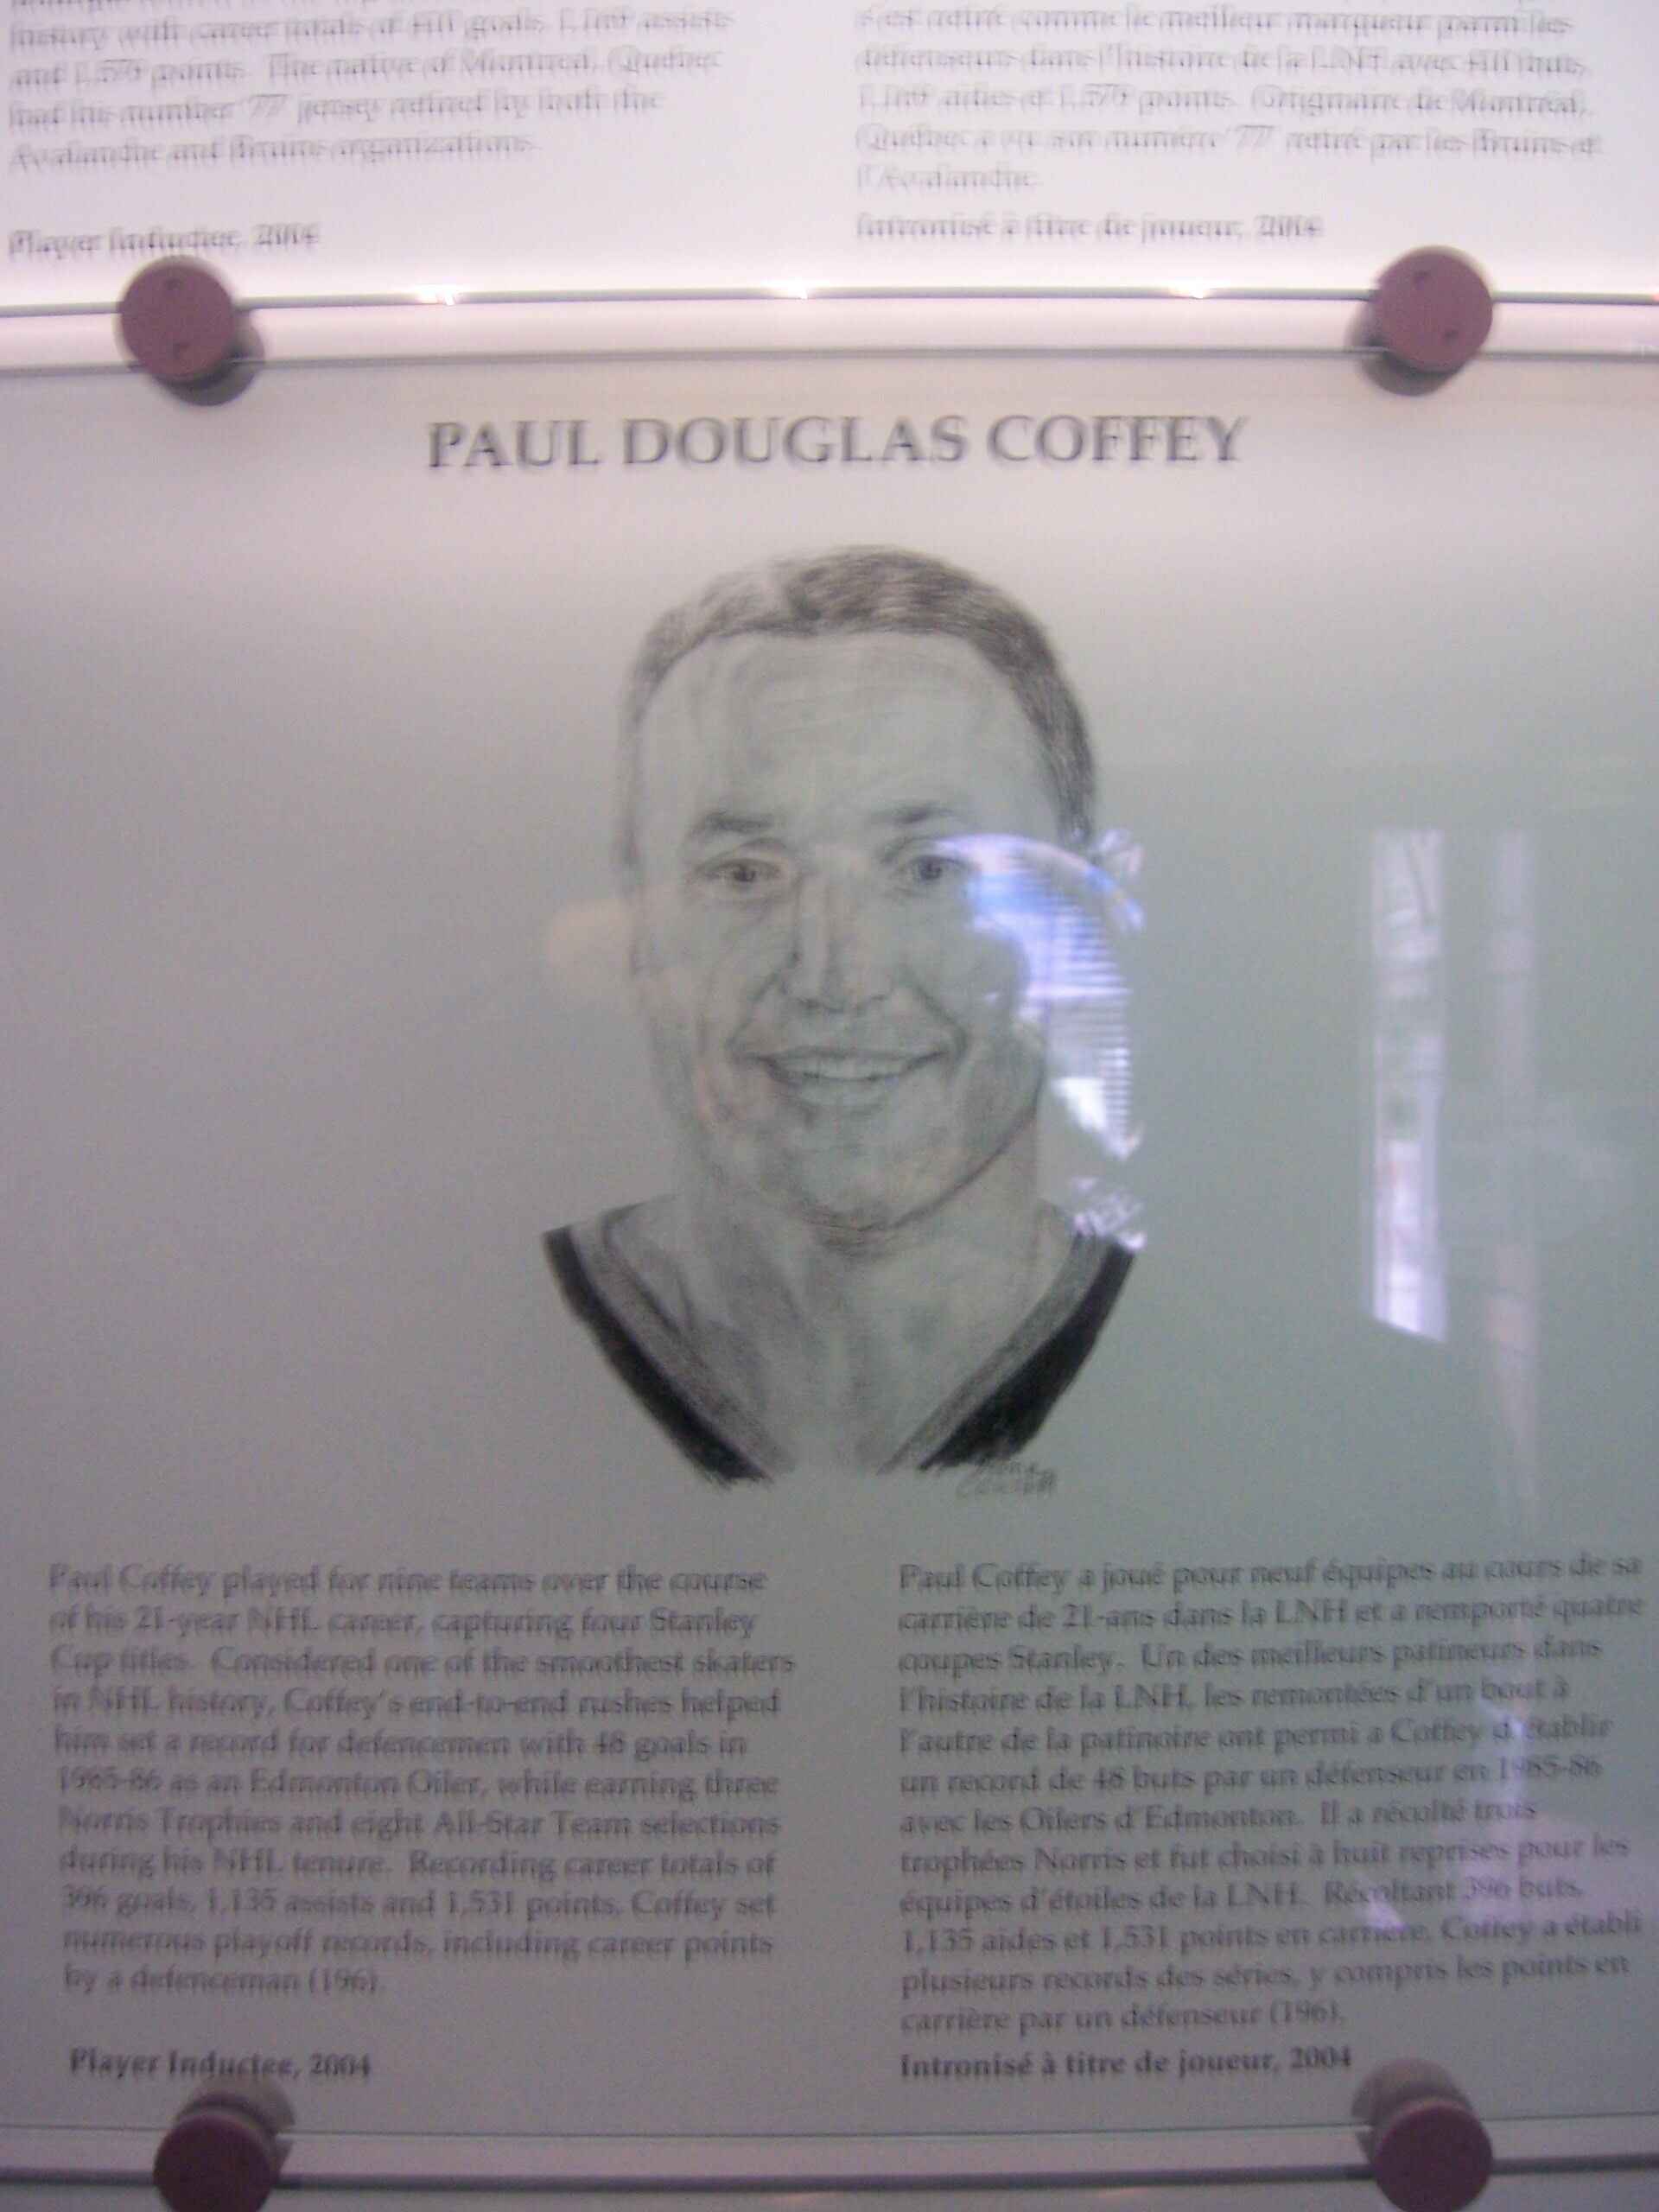 Paul Coffey - Wikipedia